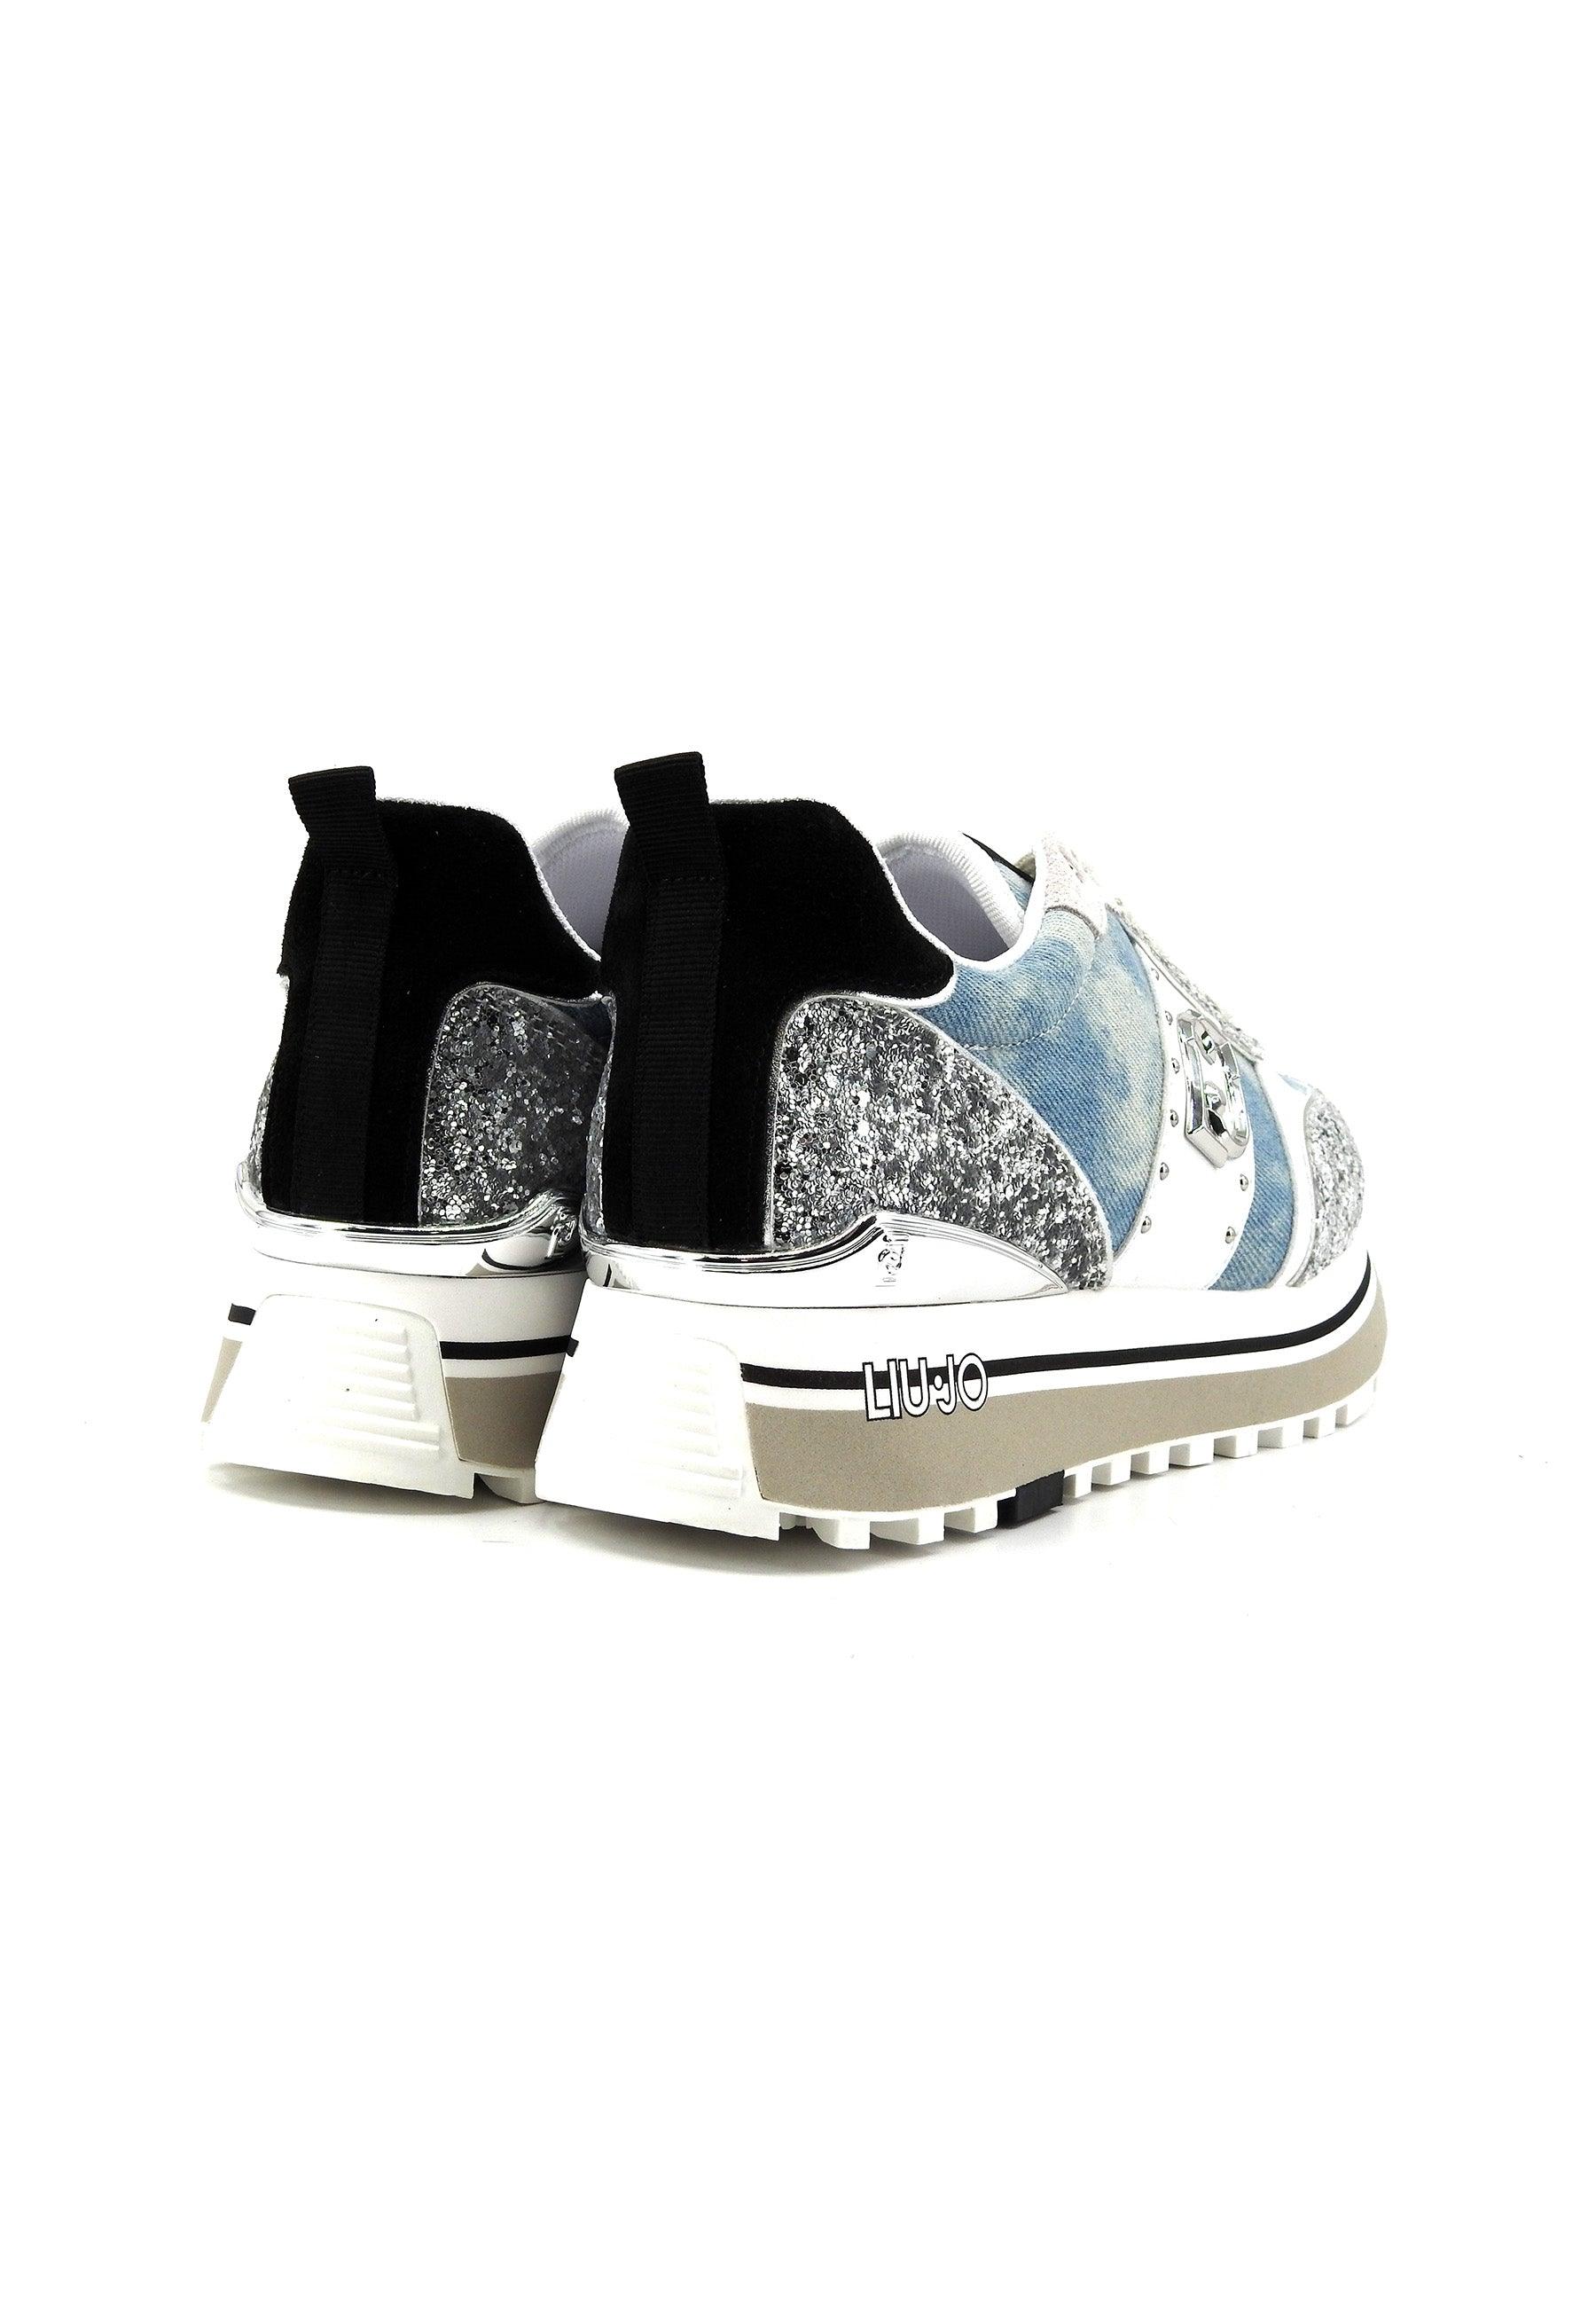 LIU JO Maxi Wonder 71 Sneaker Donna Denim Silver BA4055TX393 - Sandrini Calzature e Abbigliamento